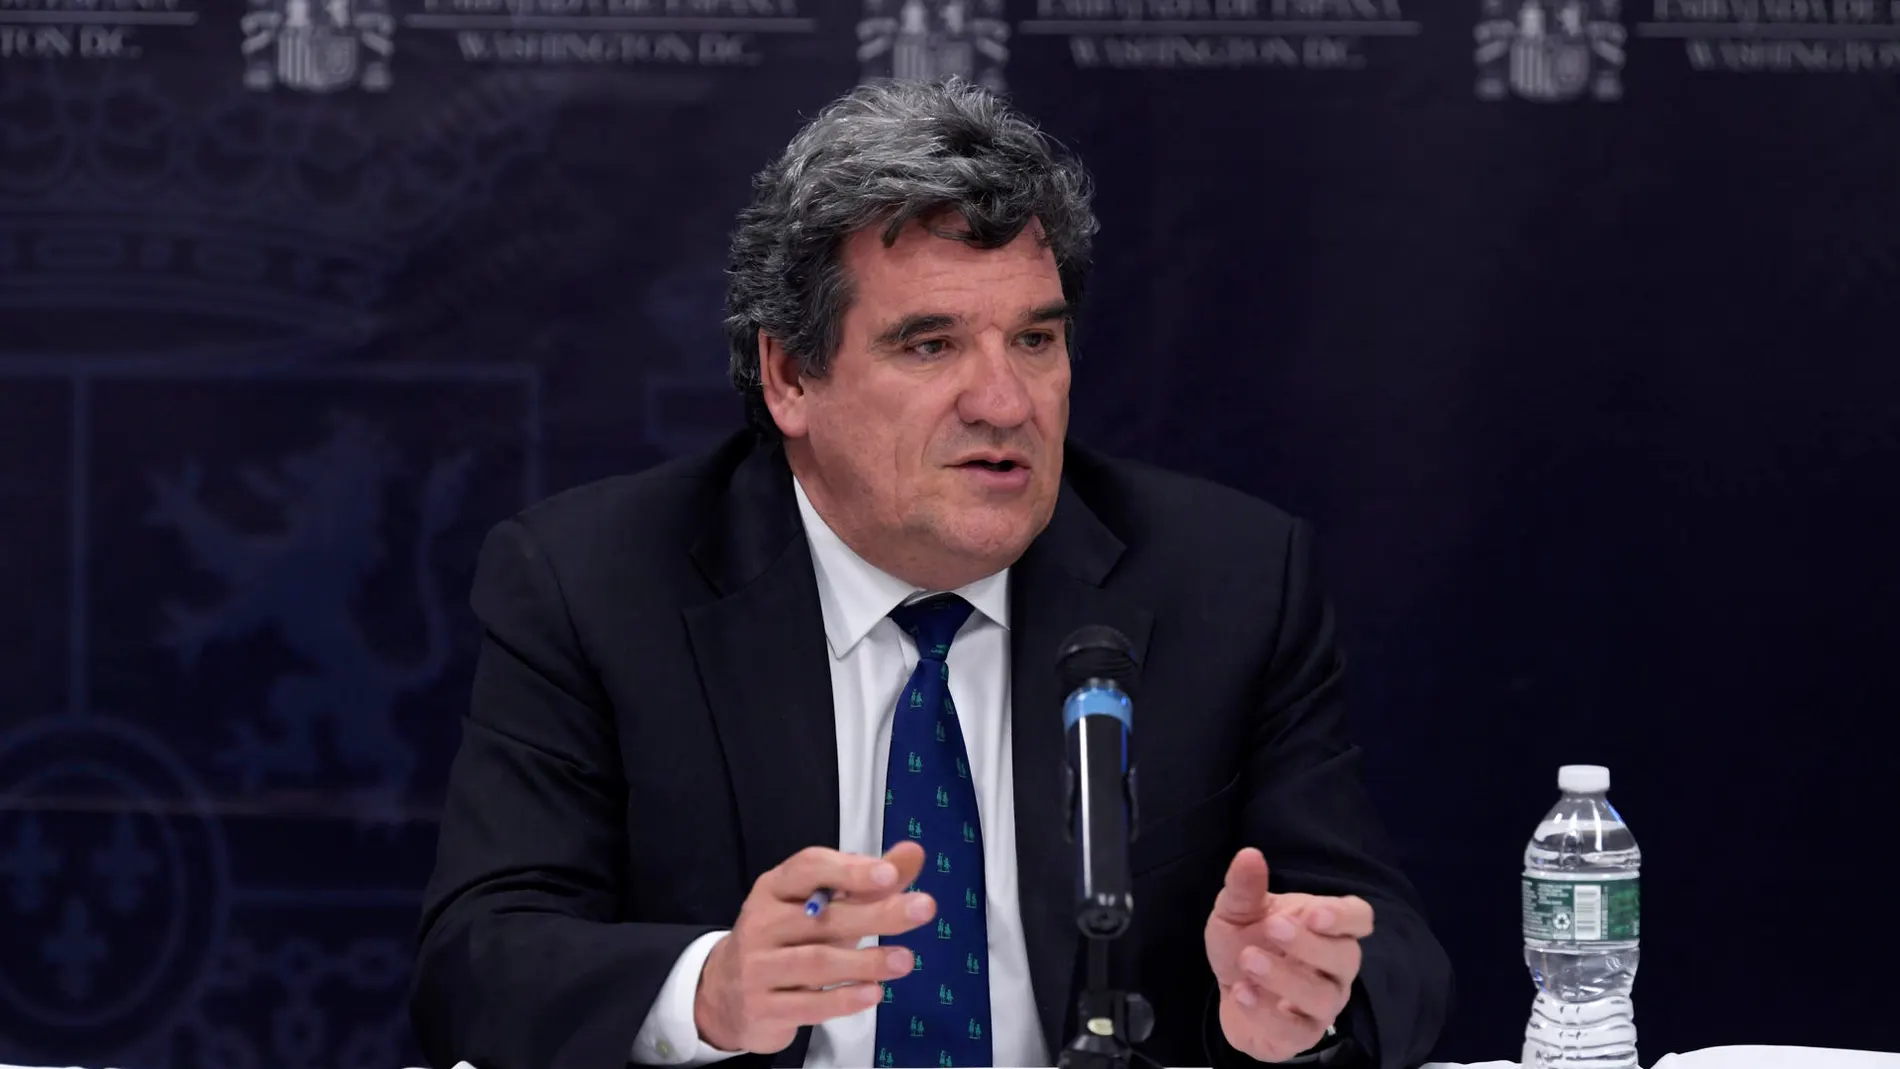 El ministro de Inclusión, Seguridad Social y Migraciones de España, José Luis Escrivá.